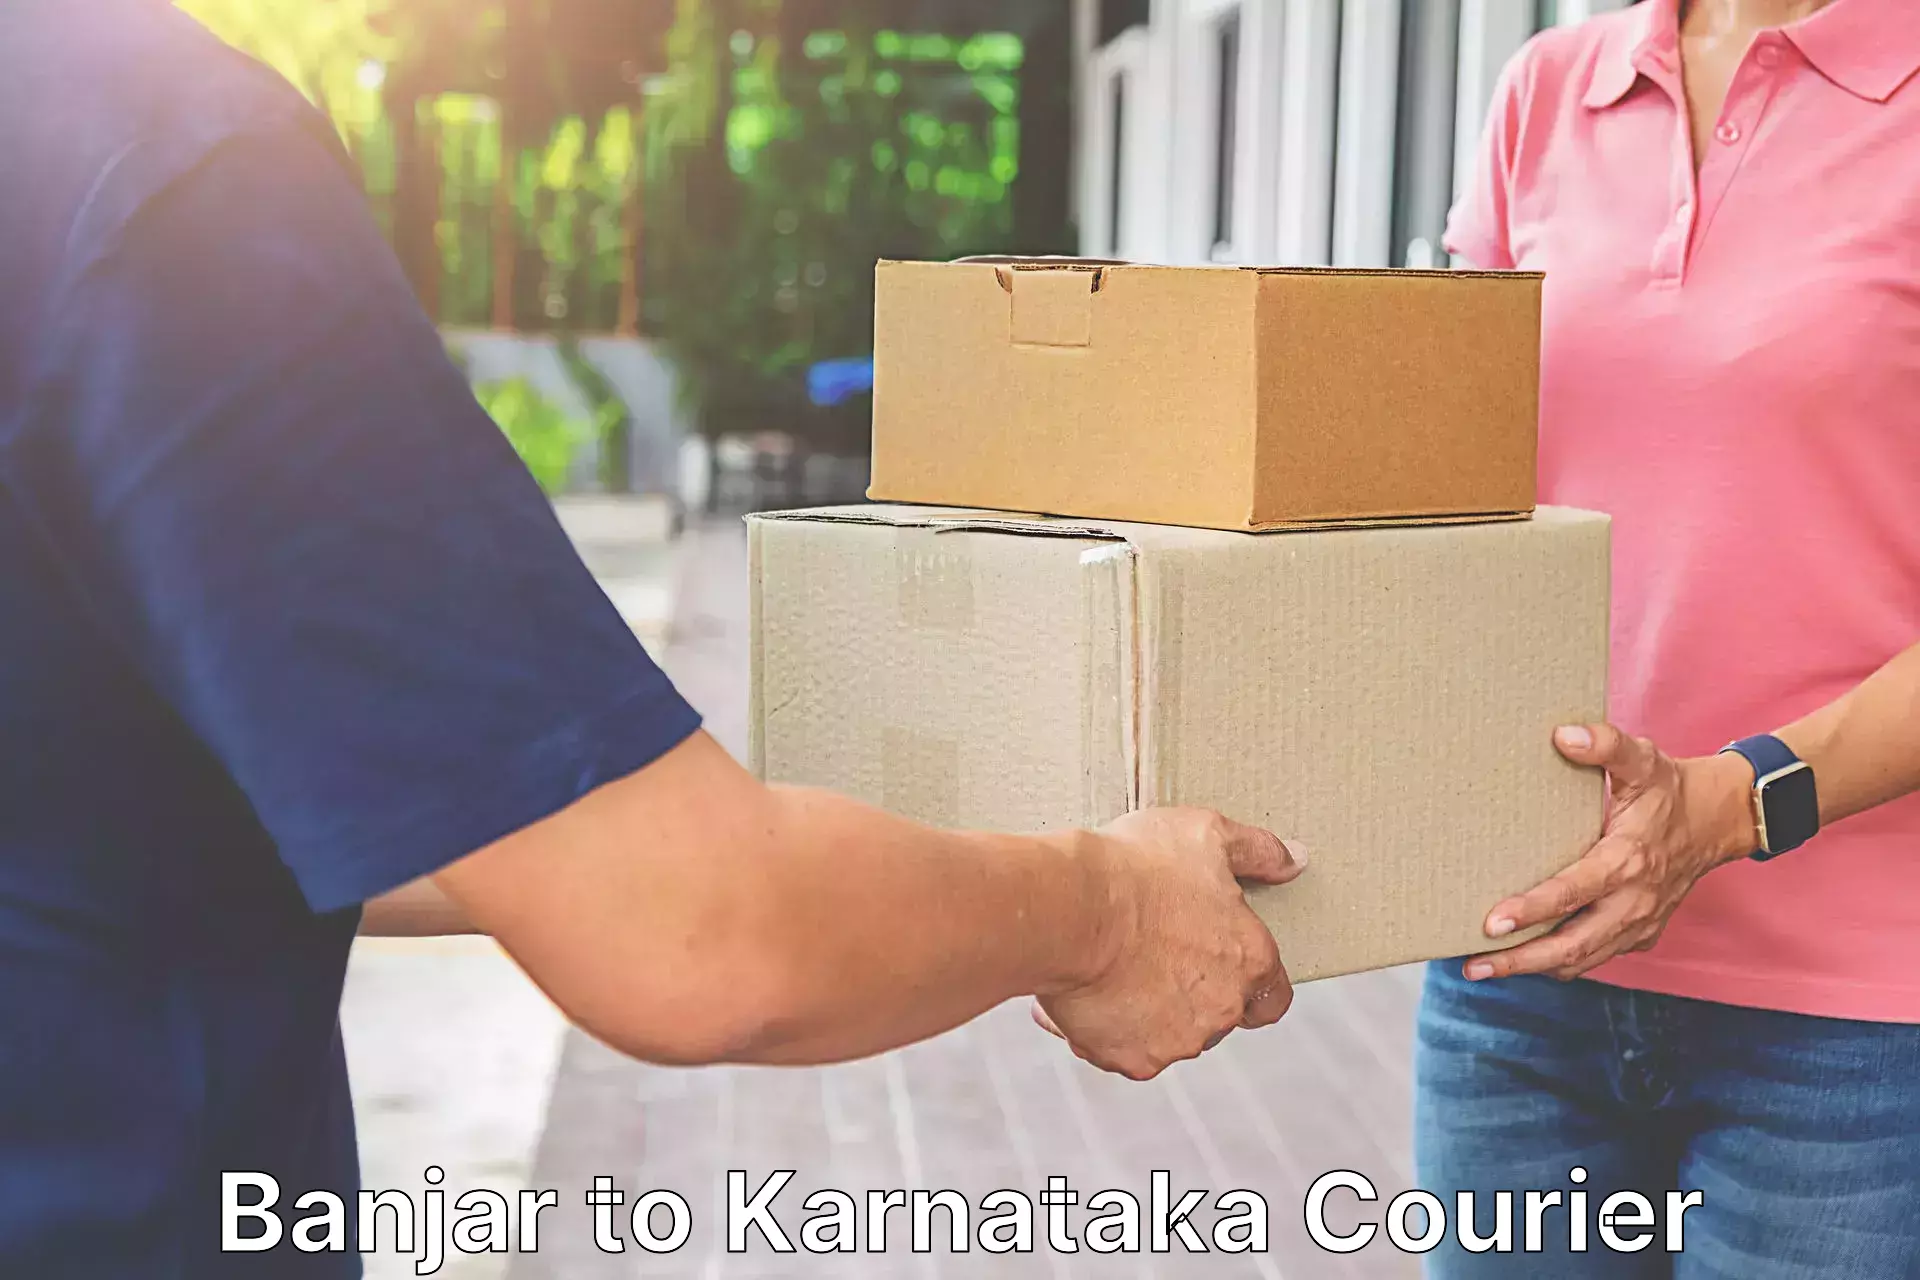 Fast shipping solutions Banjar to Karnataka